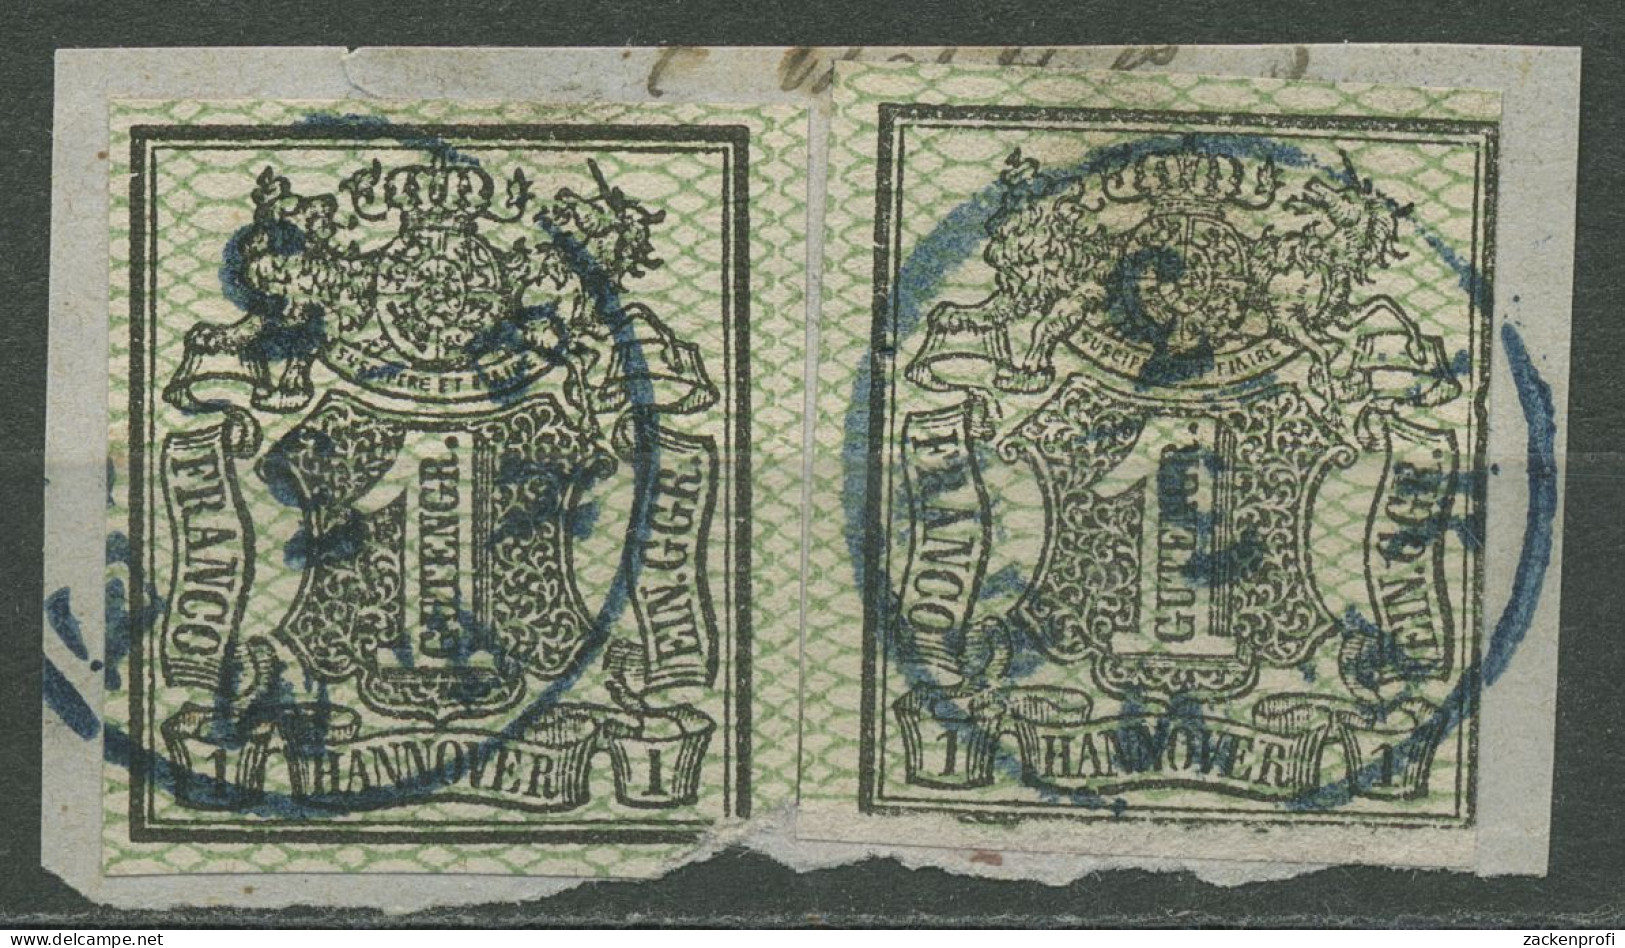 Hannover 1856/57 Wertschild Unter Wappen 9 (2) Gestempelt Briefstück, Mängel - Hanover